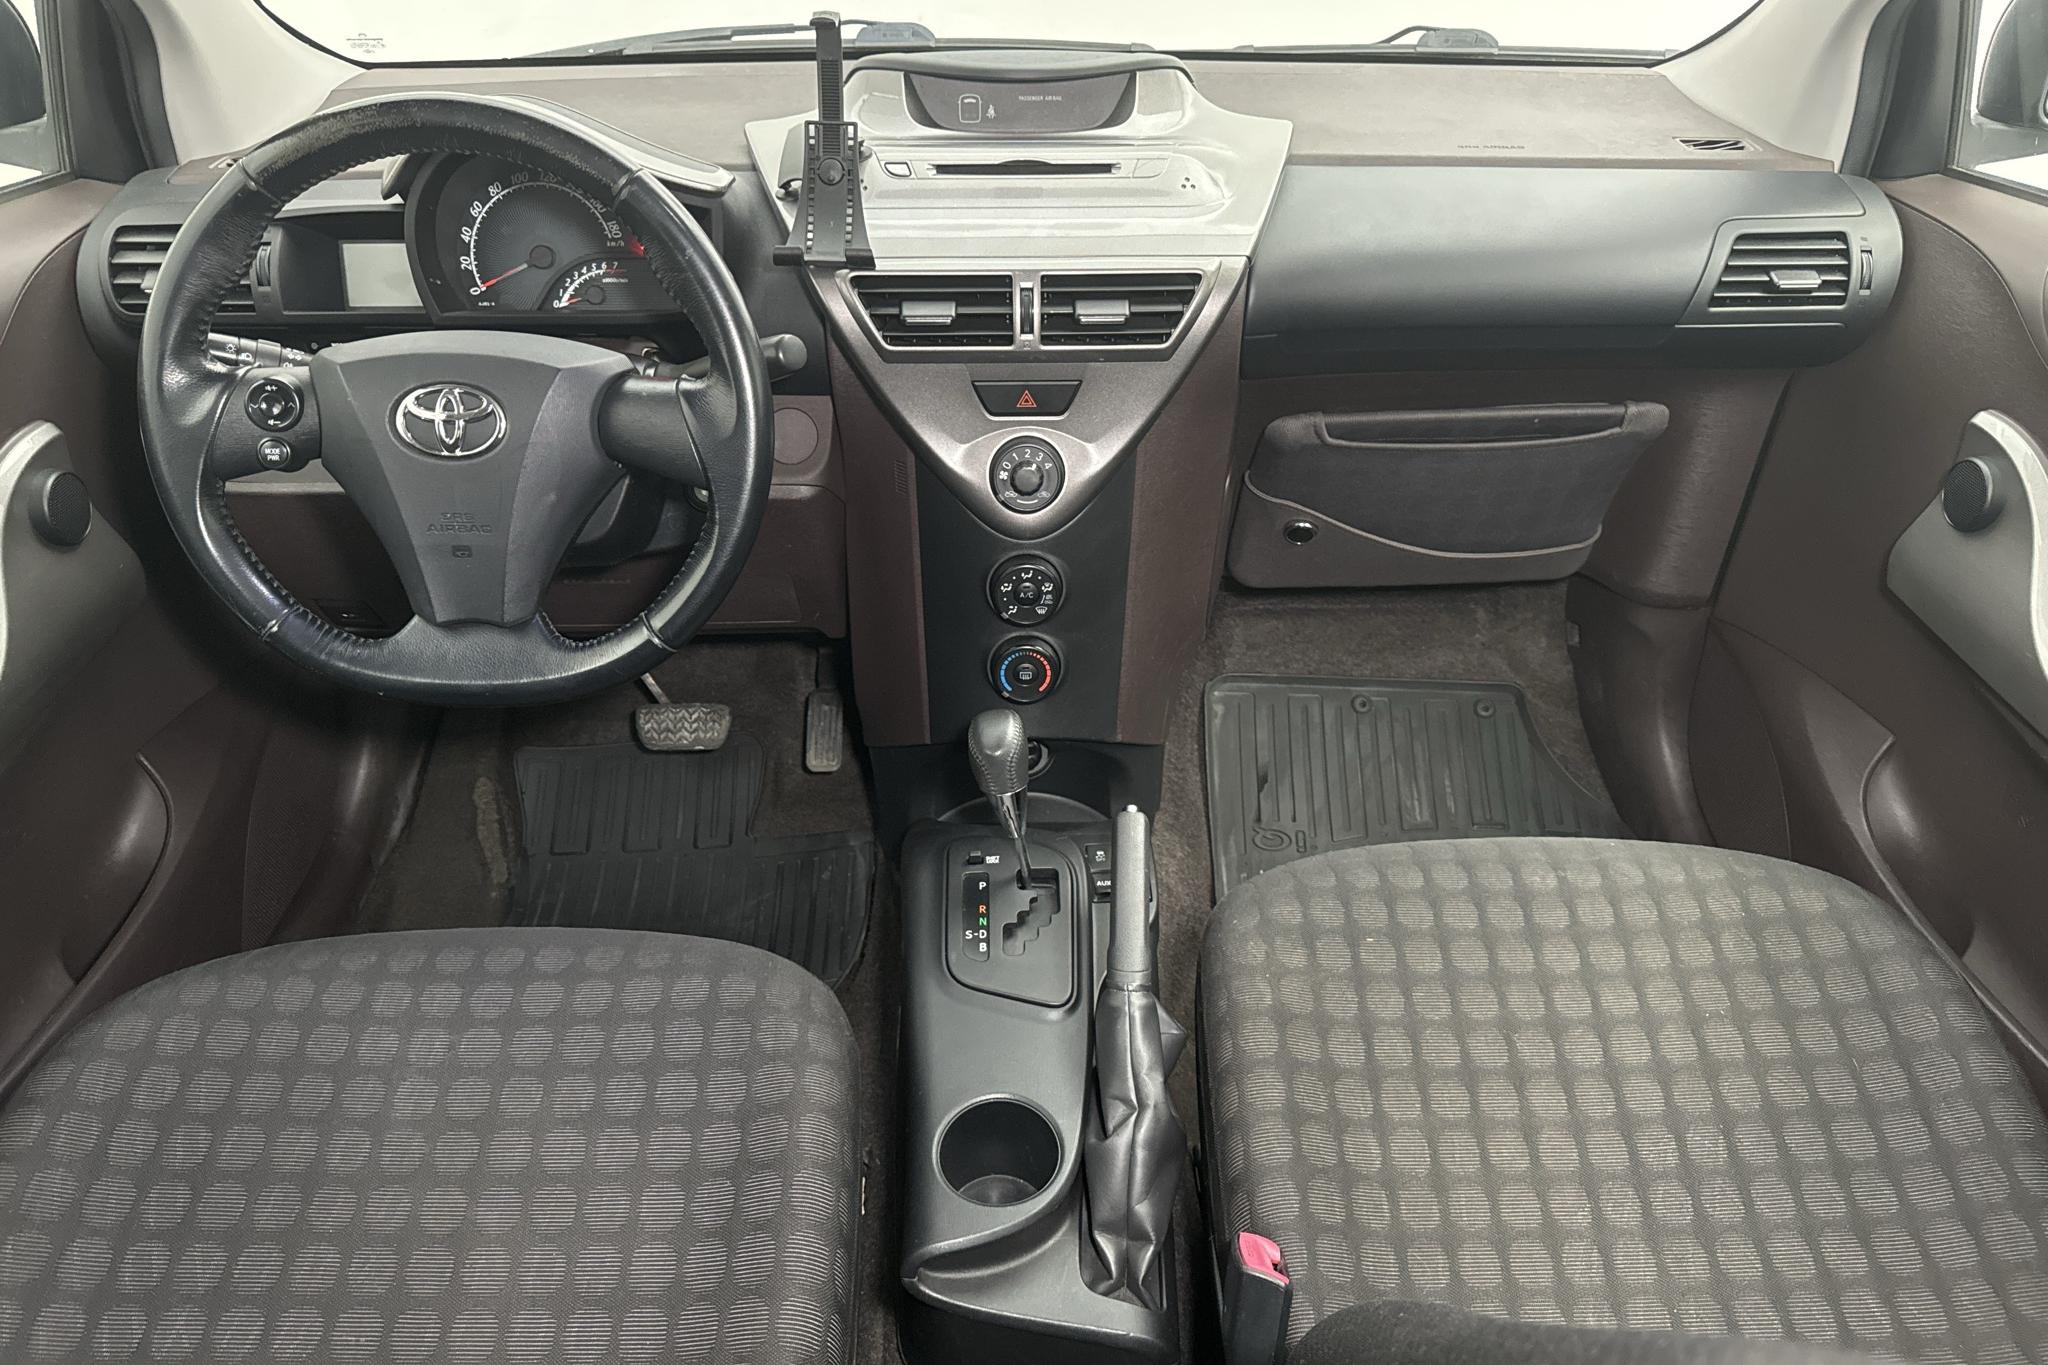 Toyota iQ 1.0 (68hk) - 11 957 mil - Automat - 2009